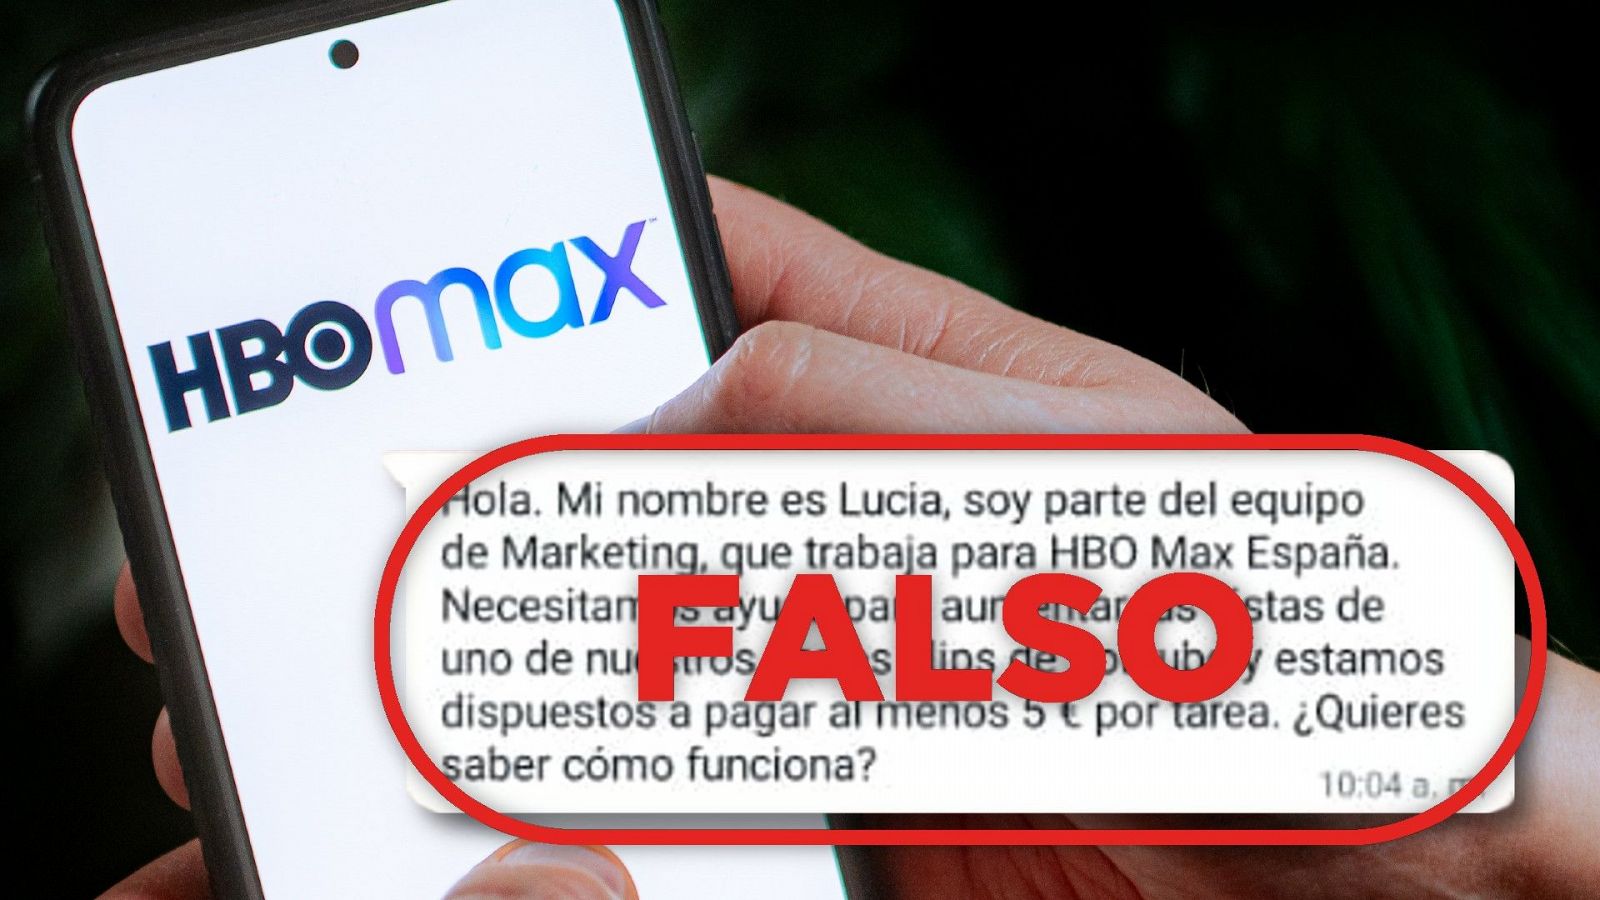 HBO Max no envía este WhatsApp que invita a ver vídeos en YouTube para ganar 5 euros